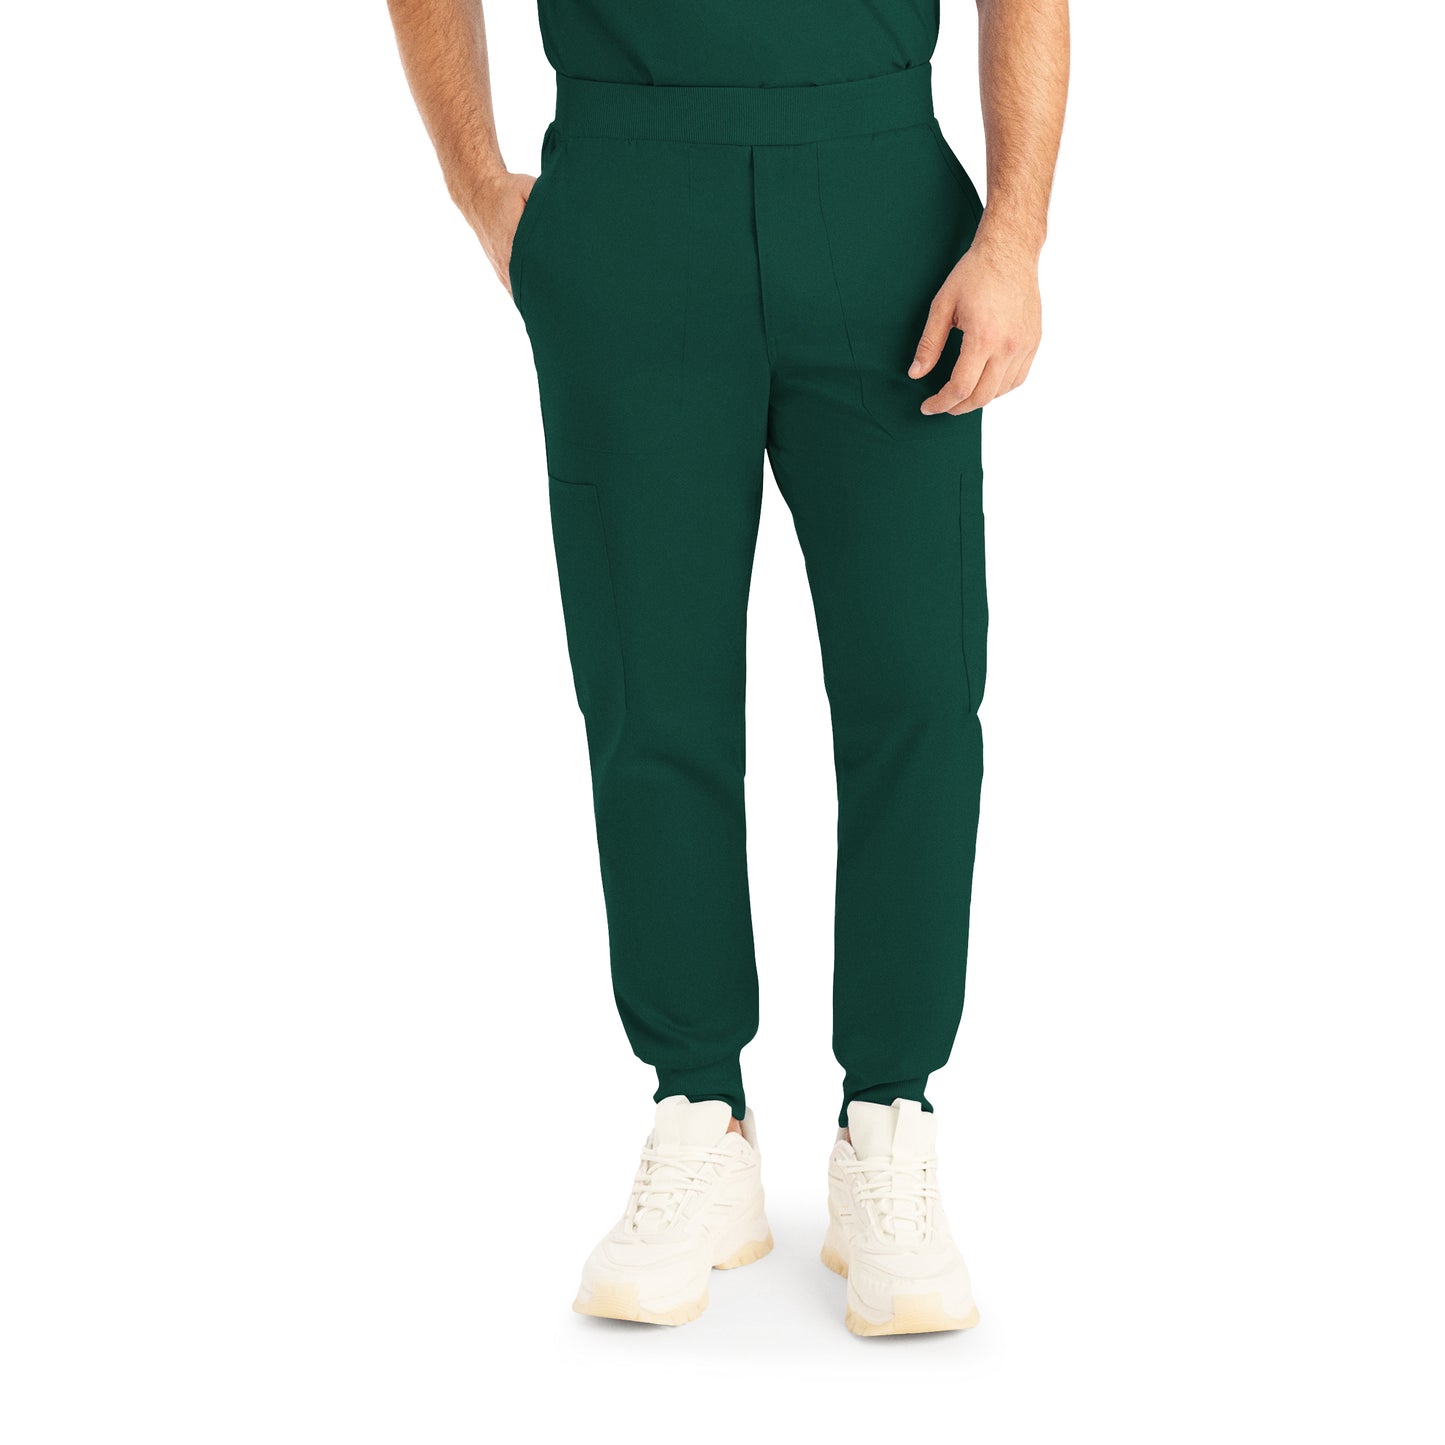 Men's jogger pants - PROFLEX - L407